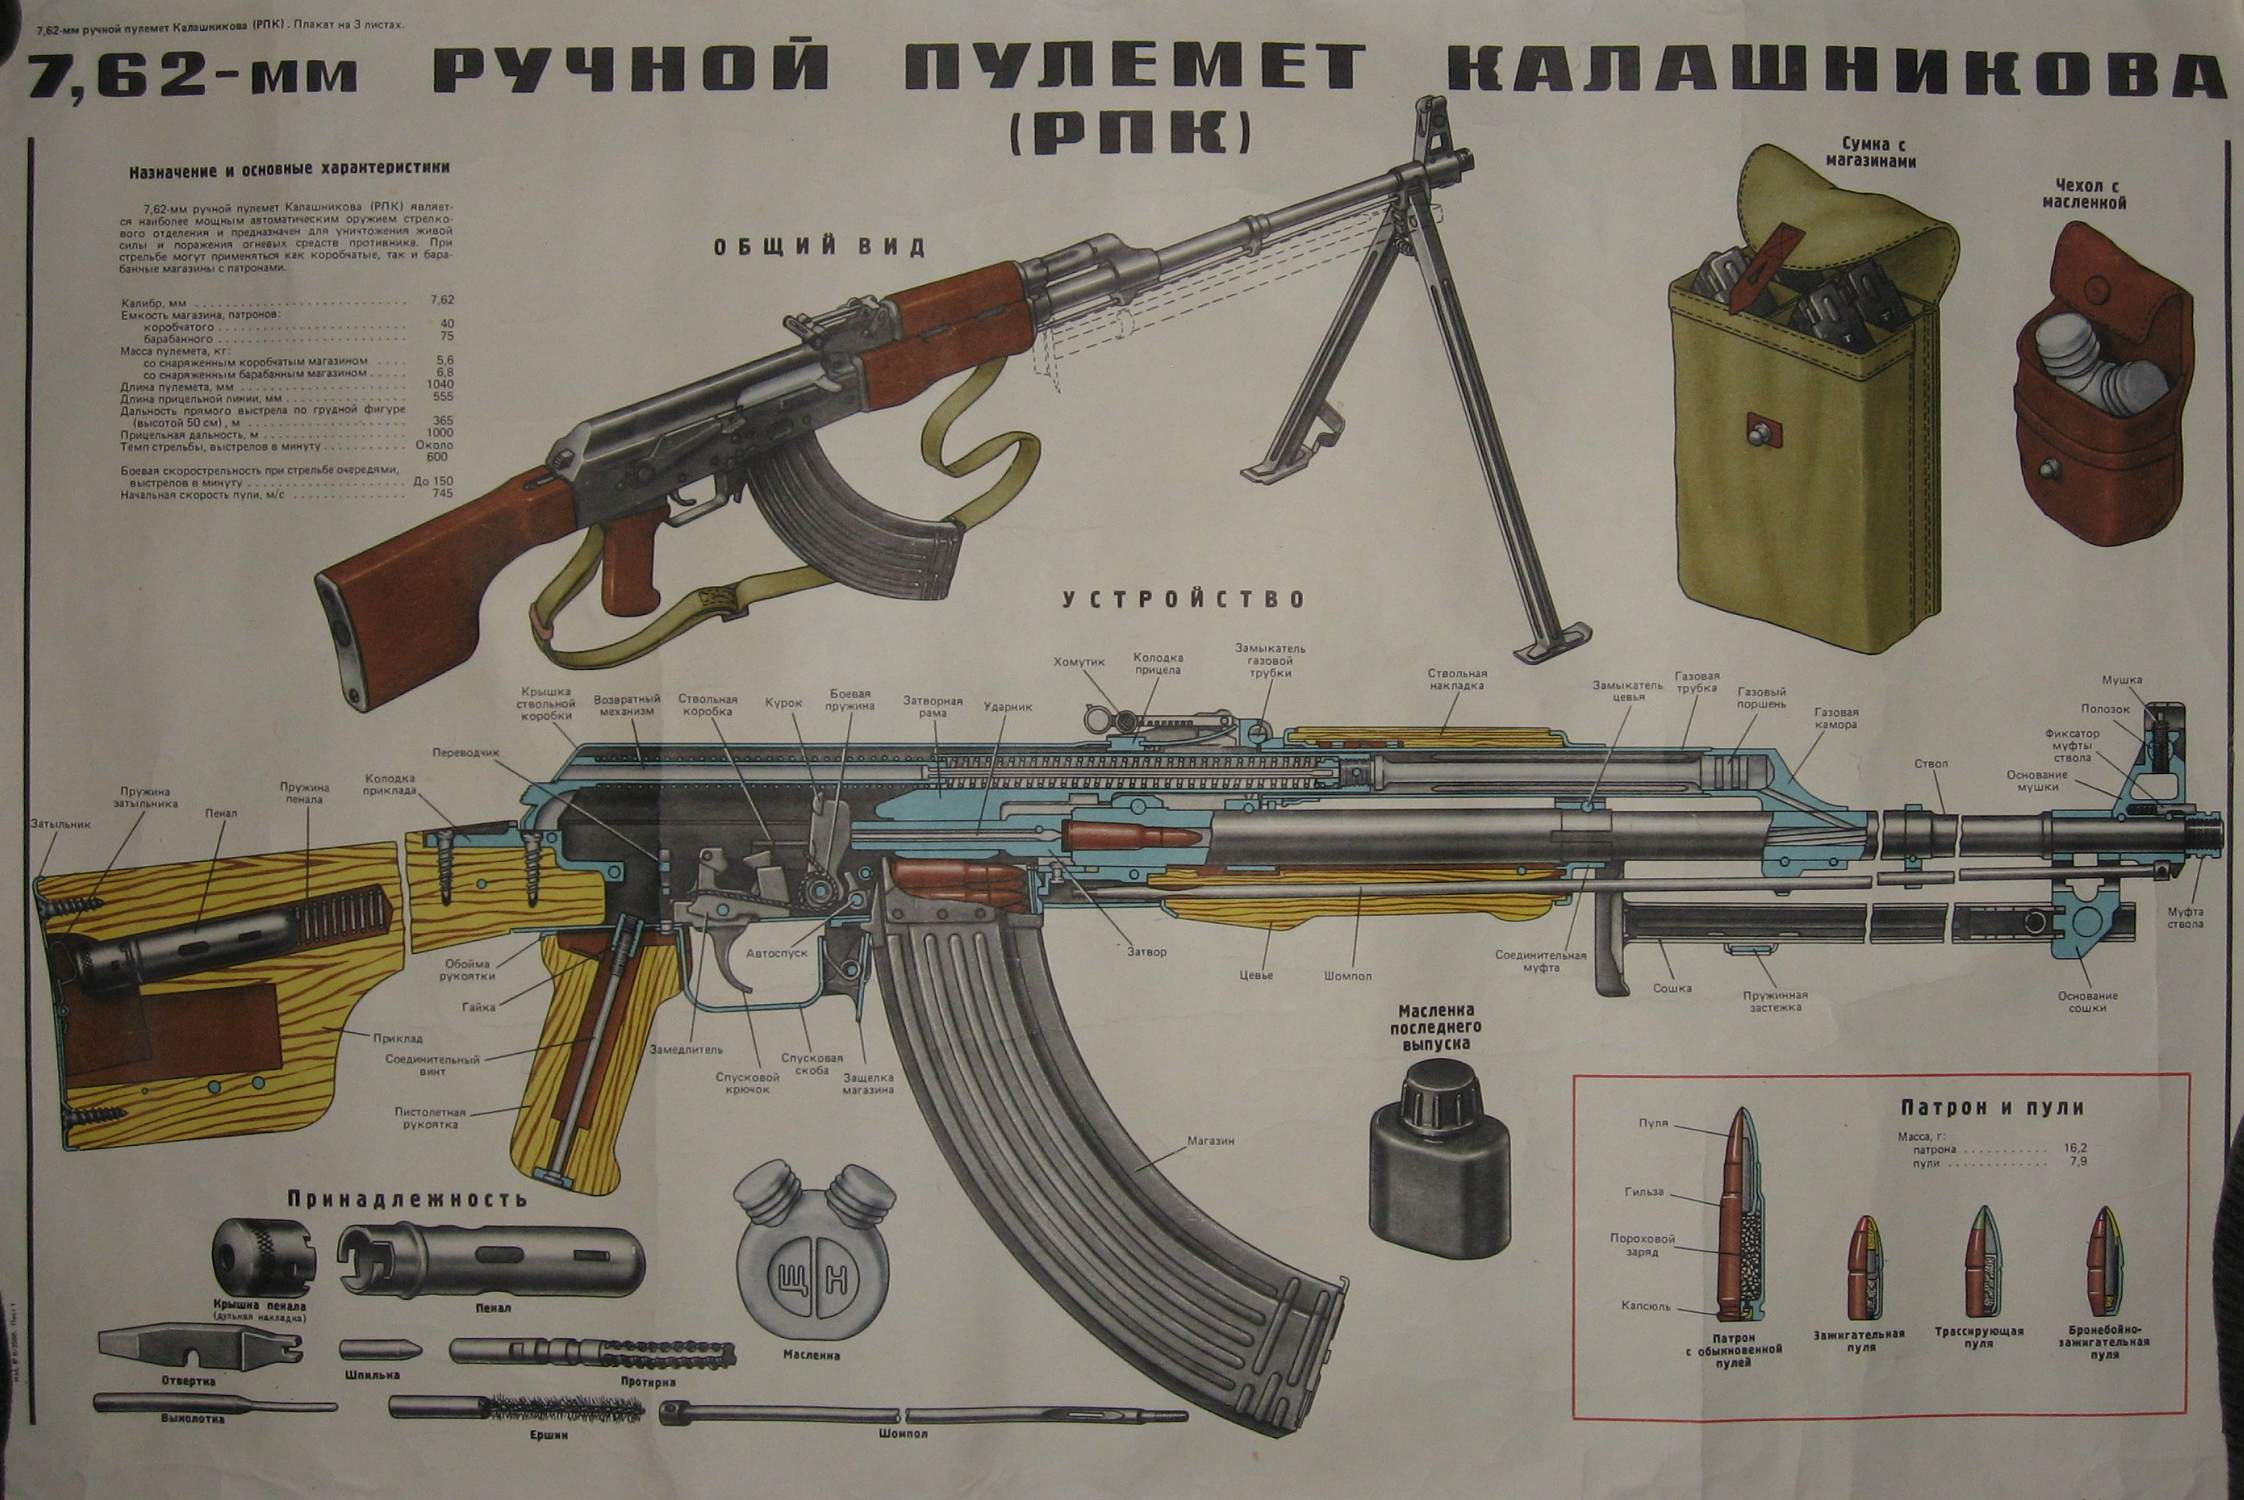 7,62 мм ручной пулемёт Калашникова (РПК)